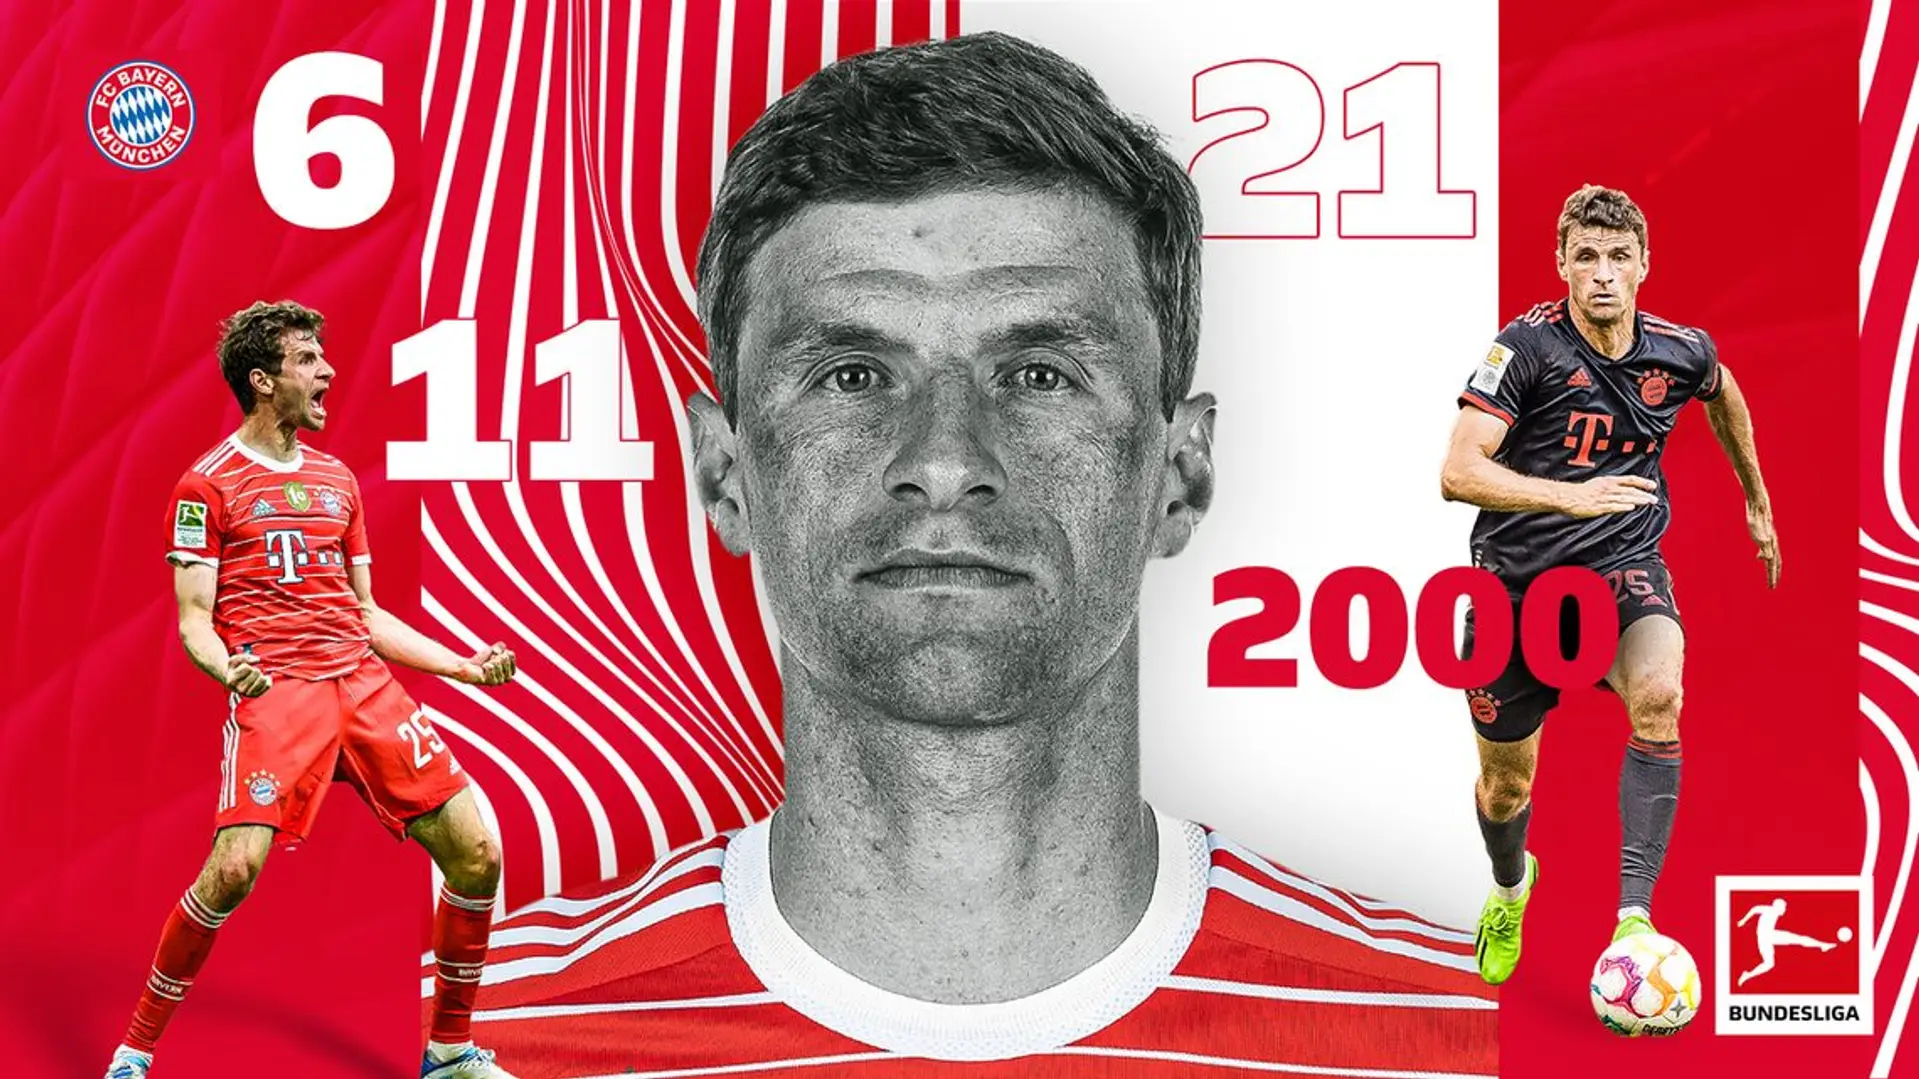 Torvorlagen-Gott Thomas Müller wird noch eine wichtige Rolle im Team spielen - er hat viele Stärken